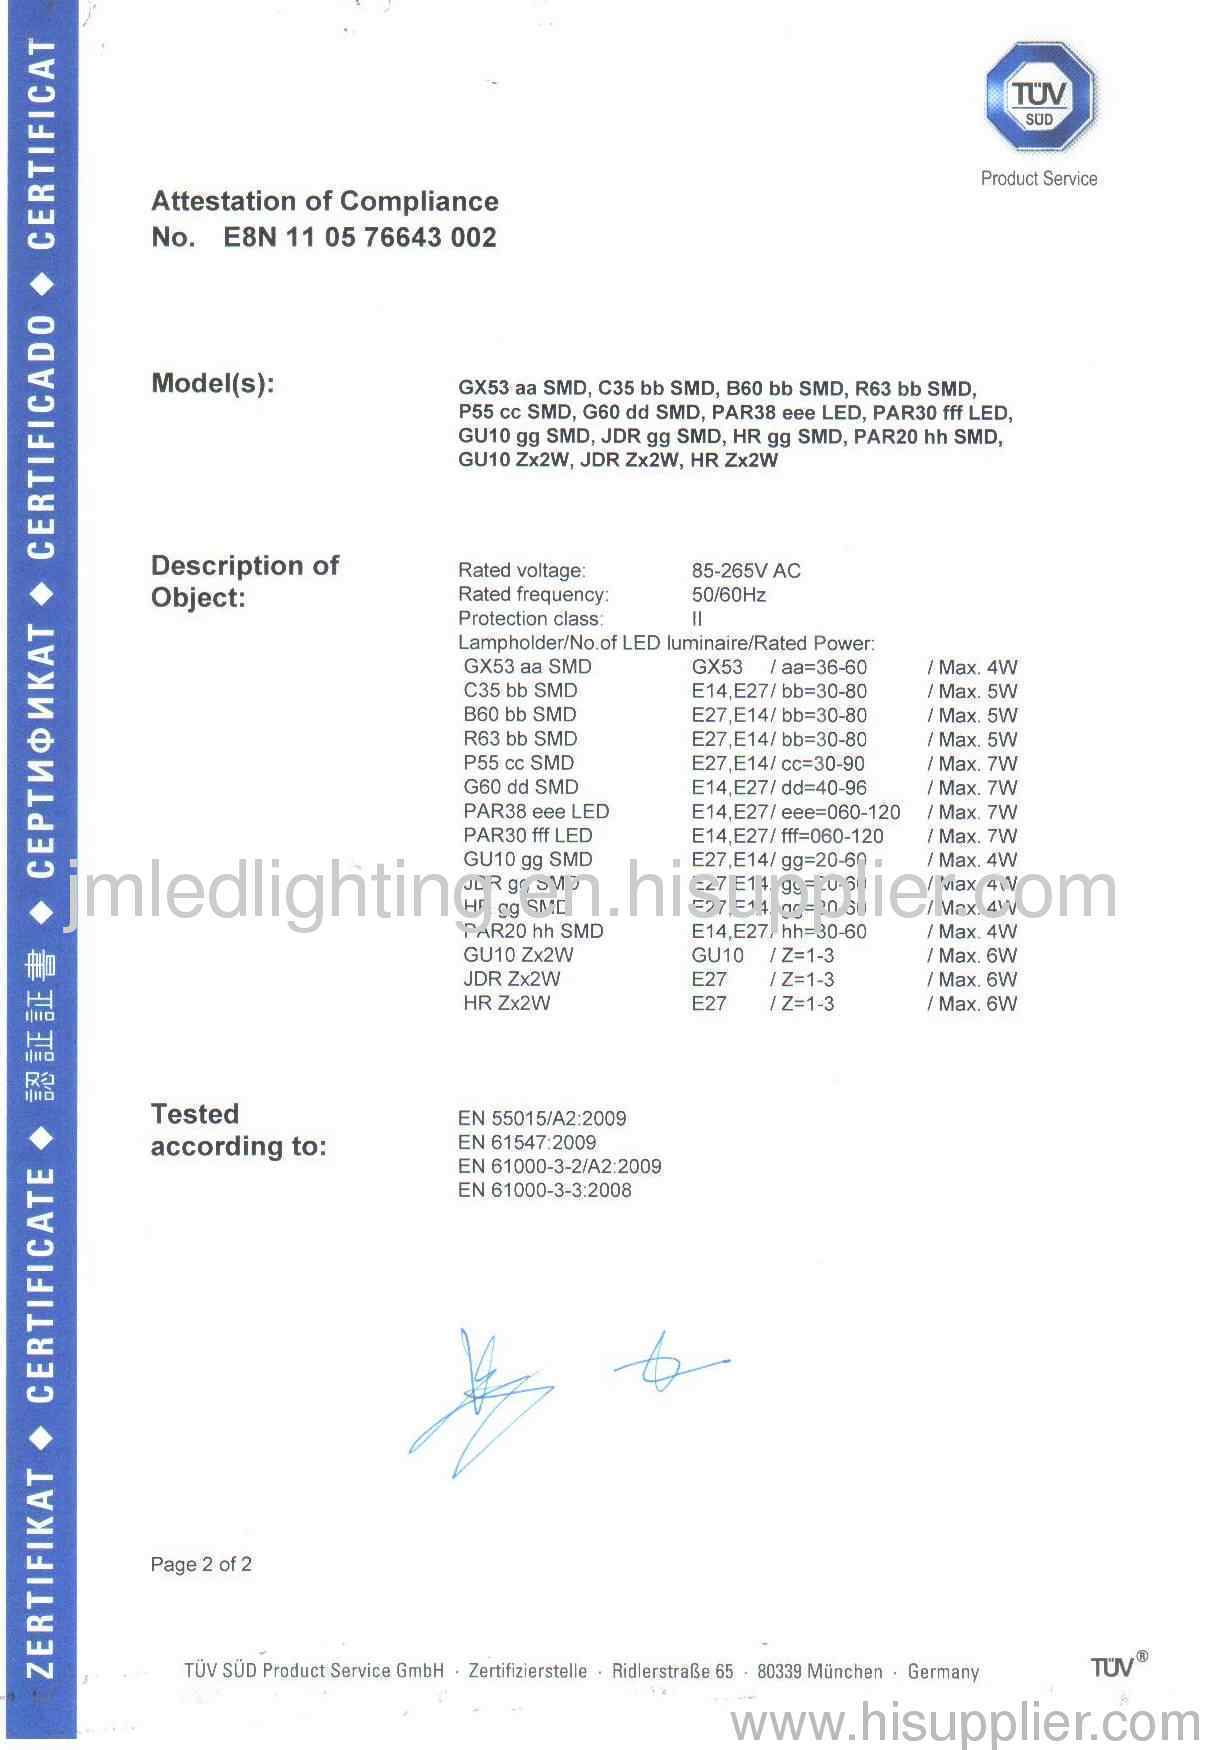 TUV Certificate-2(2)